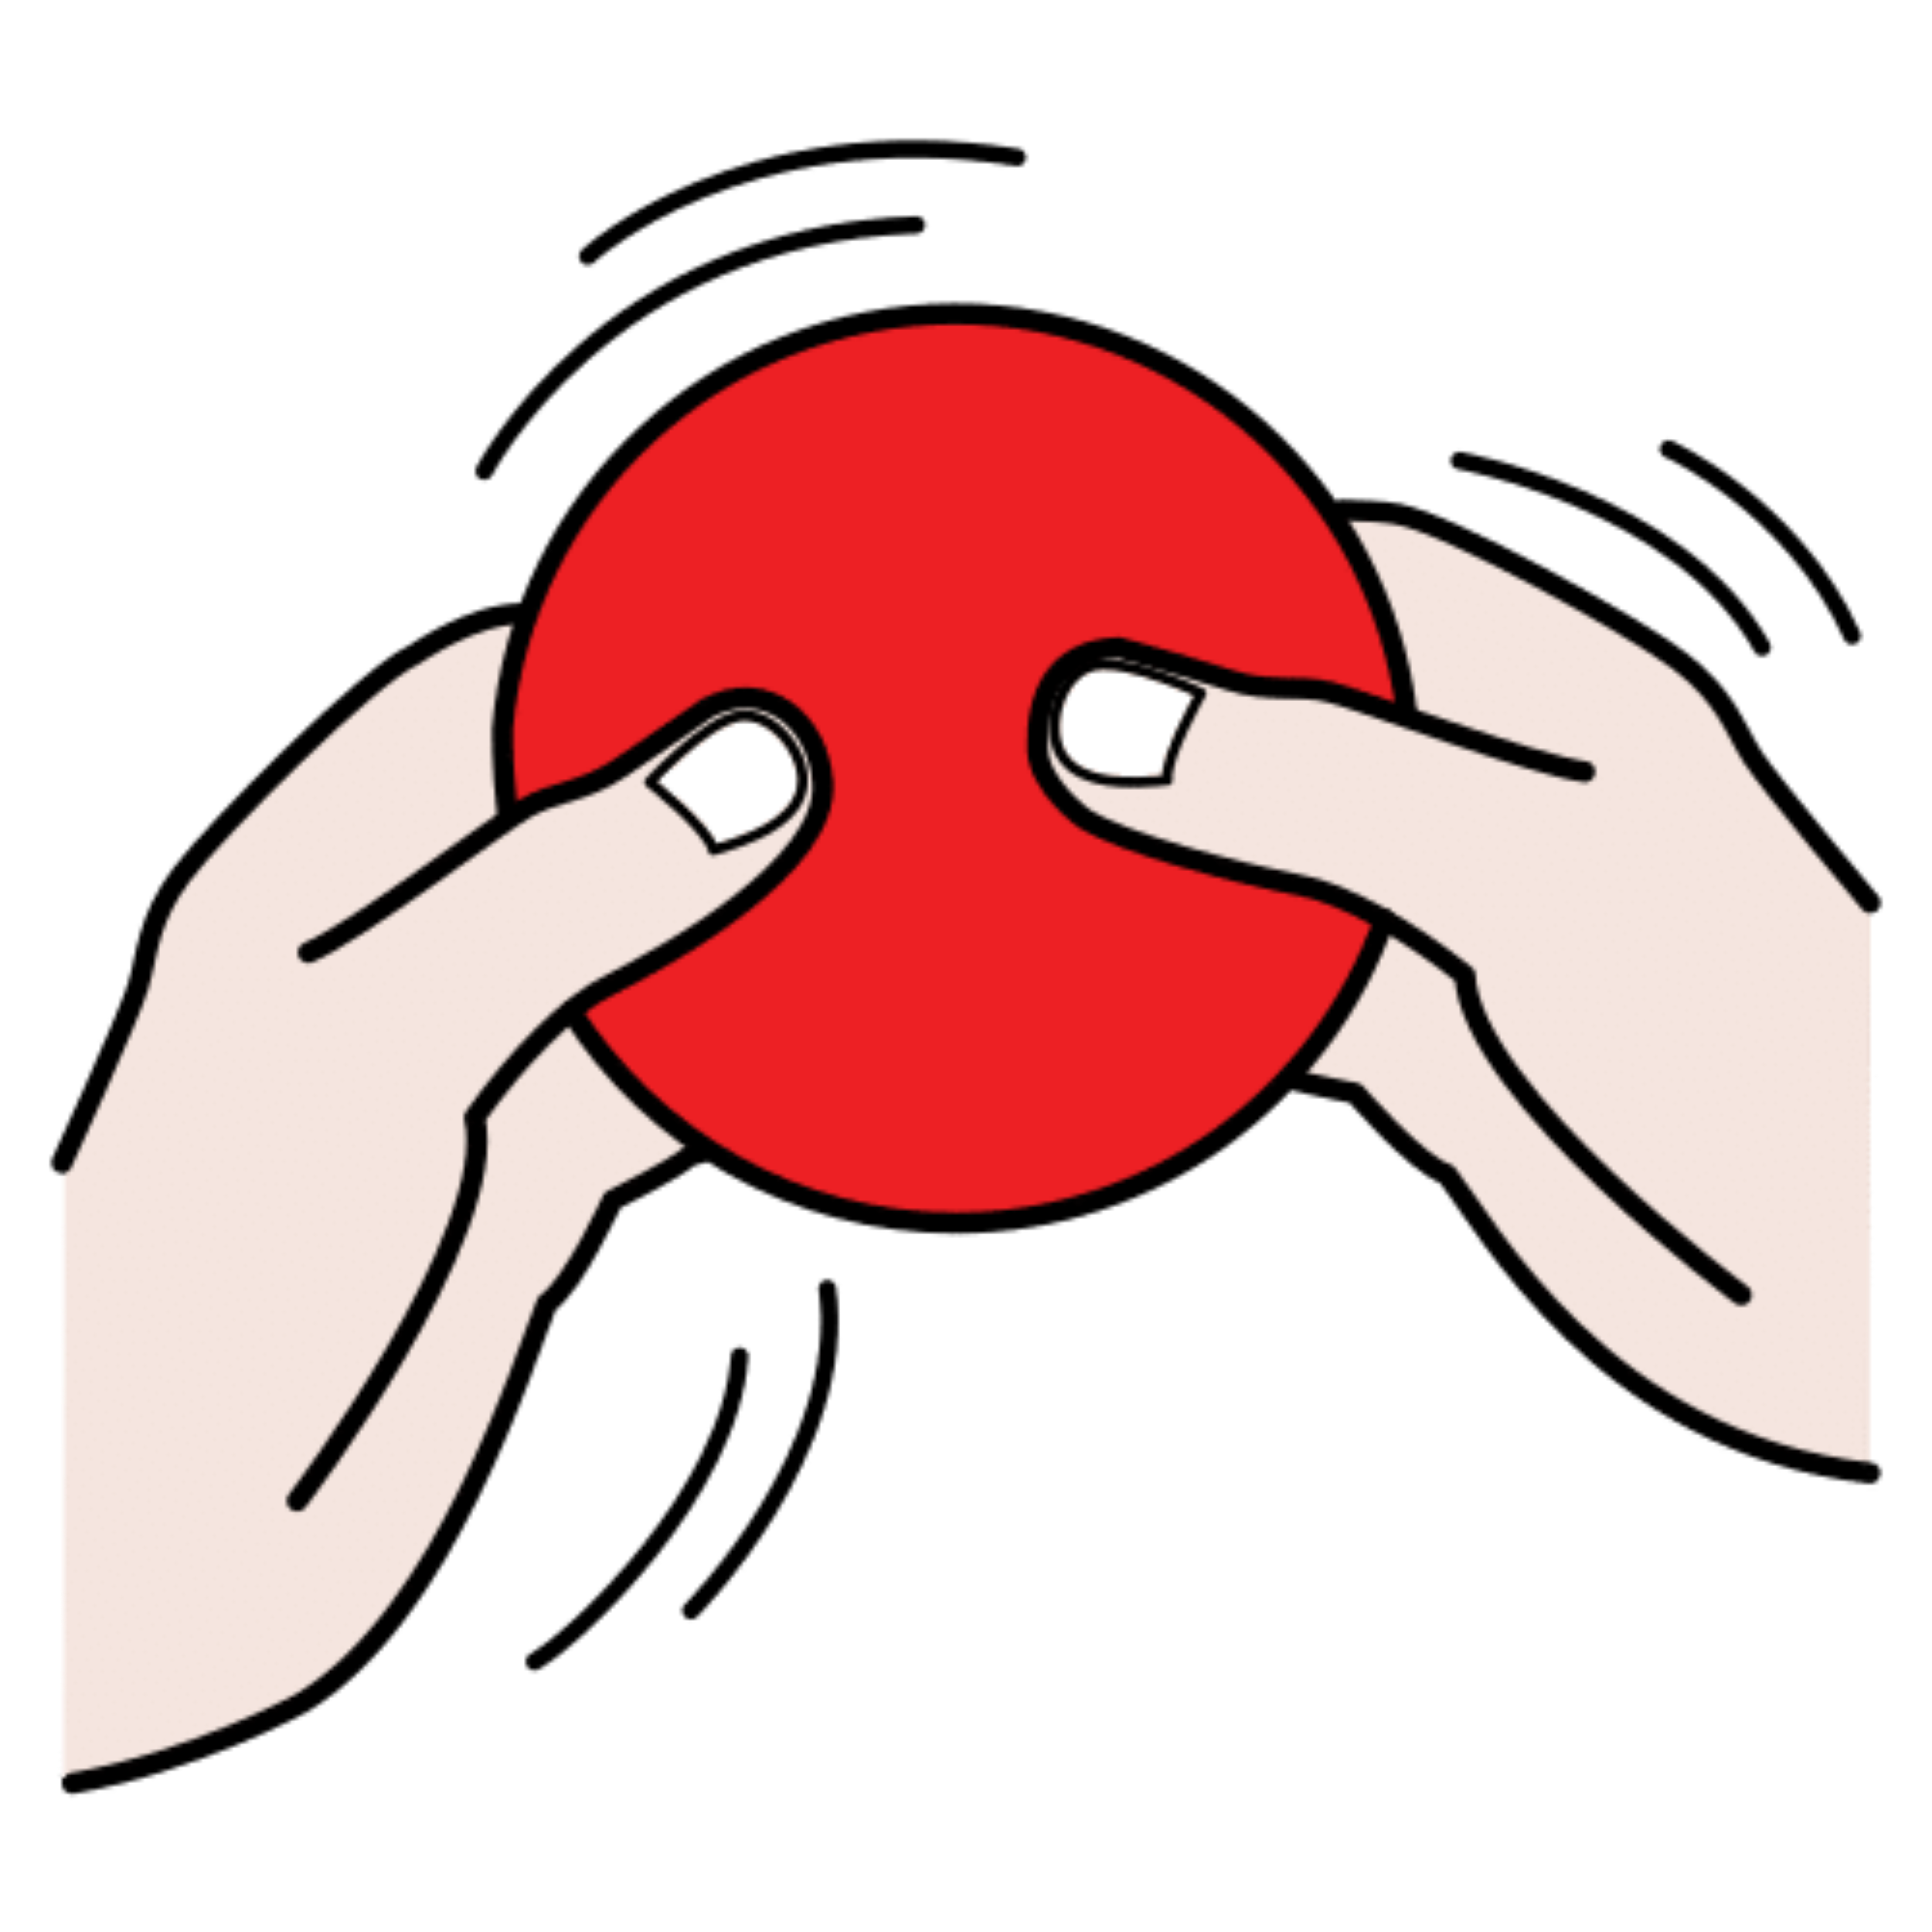 La imagen muestra unas manos manipulando una ficha roja